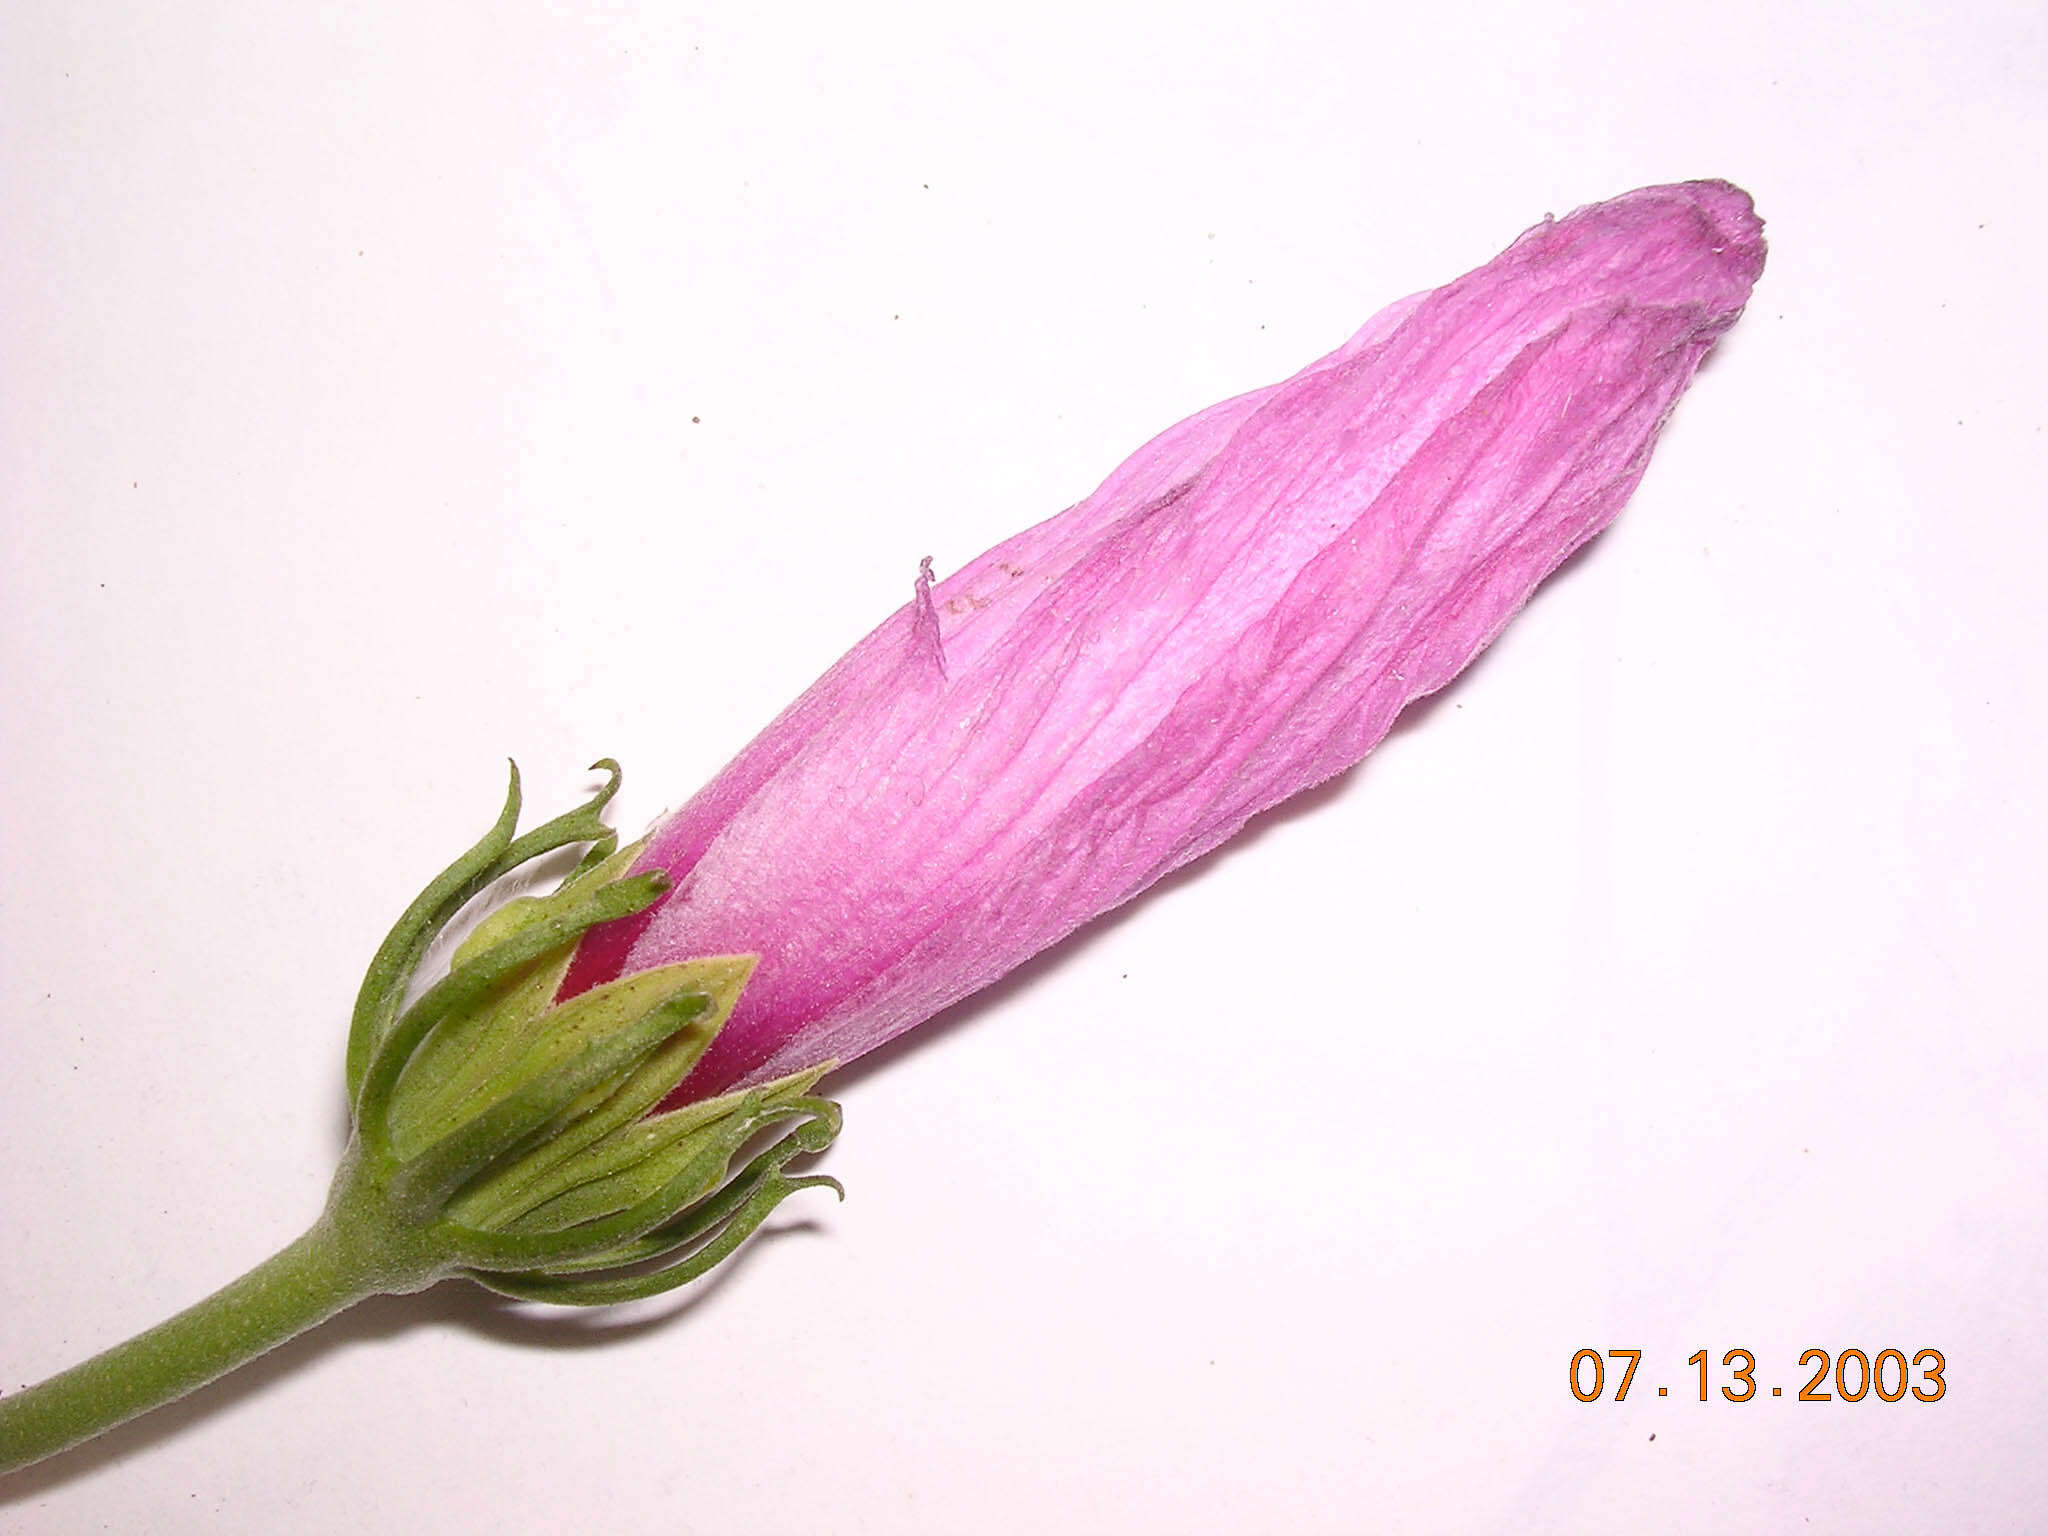 Image of Hibiscus peruvianus R. E. Fries